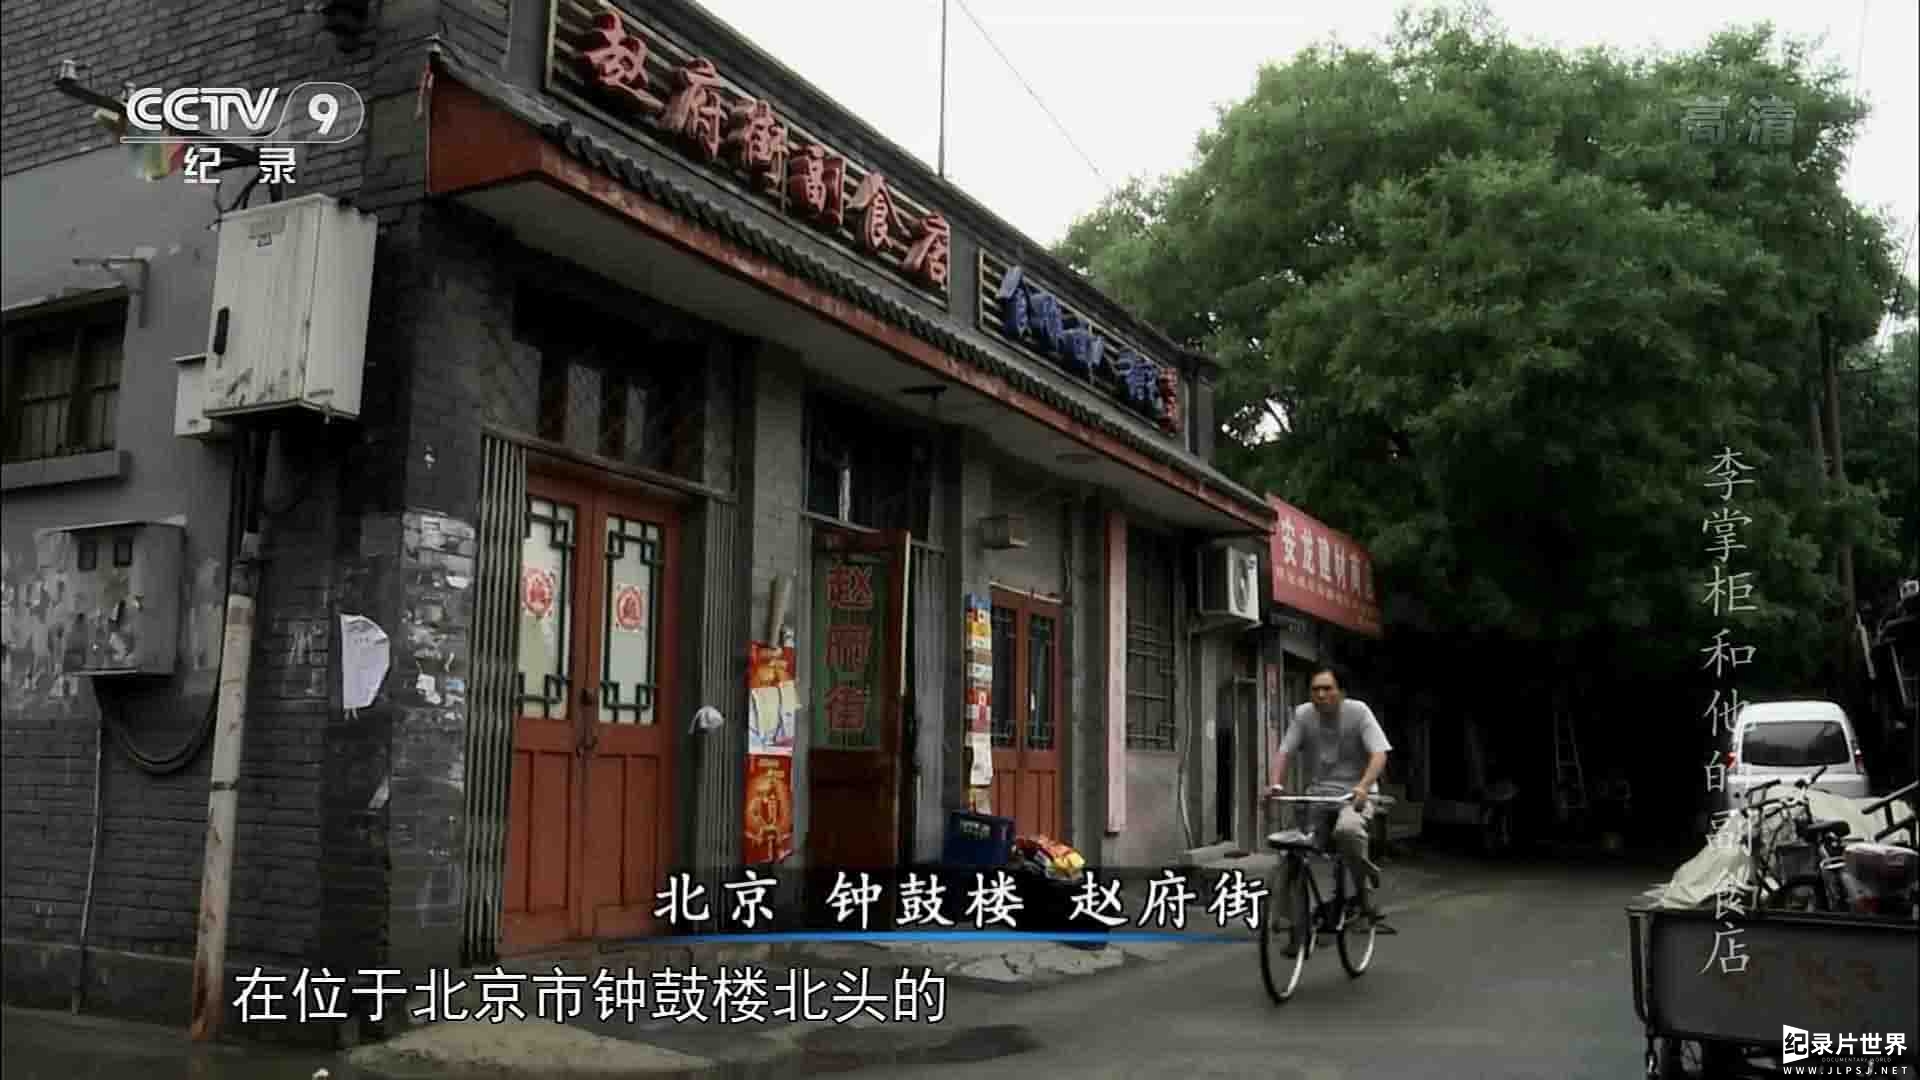 央视纪录片《李掌柜和他的副食店》全1集